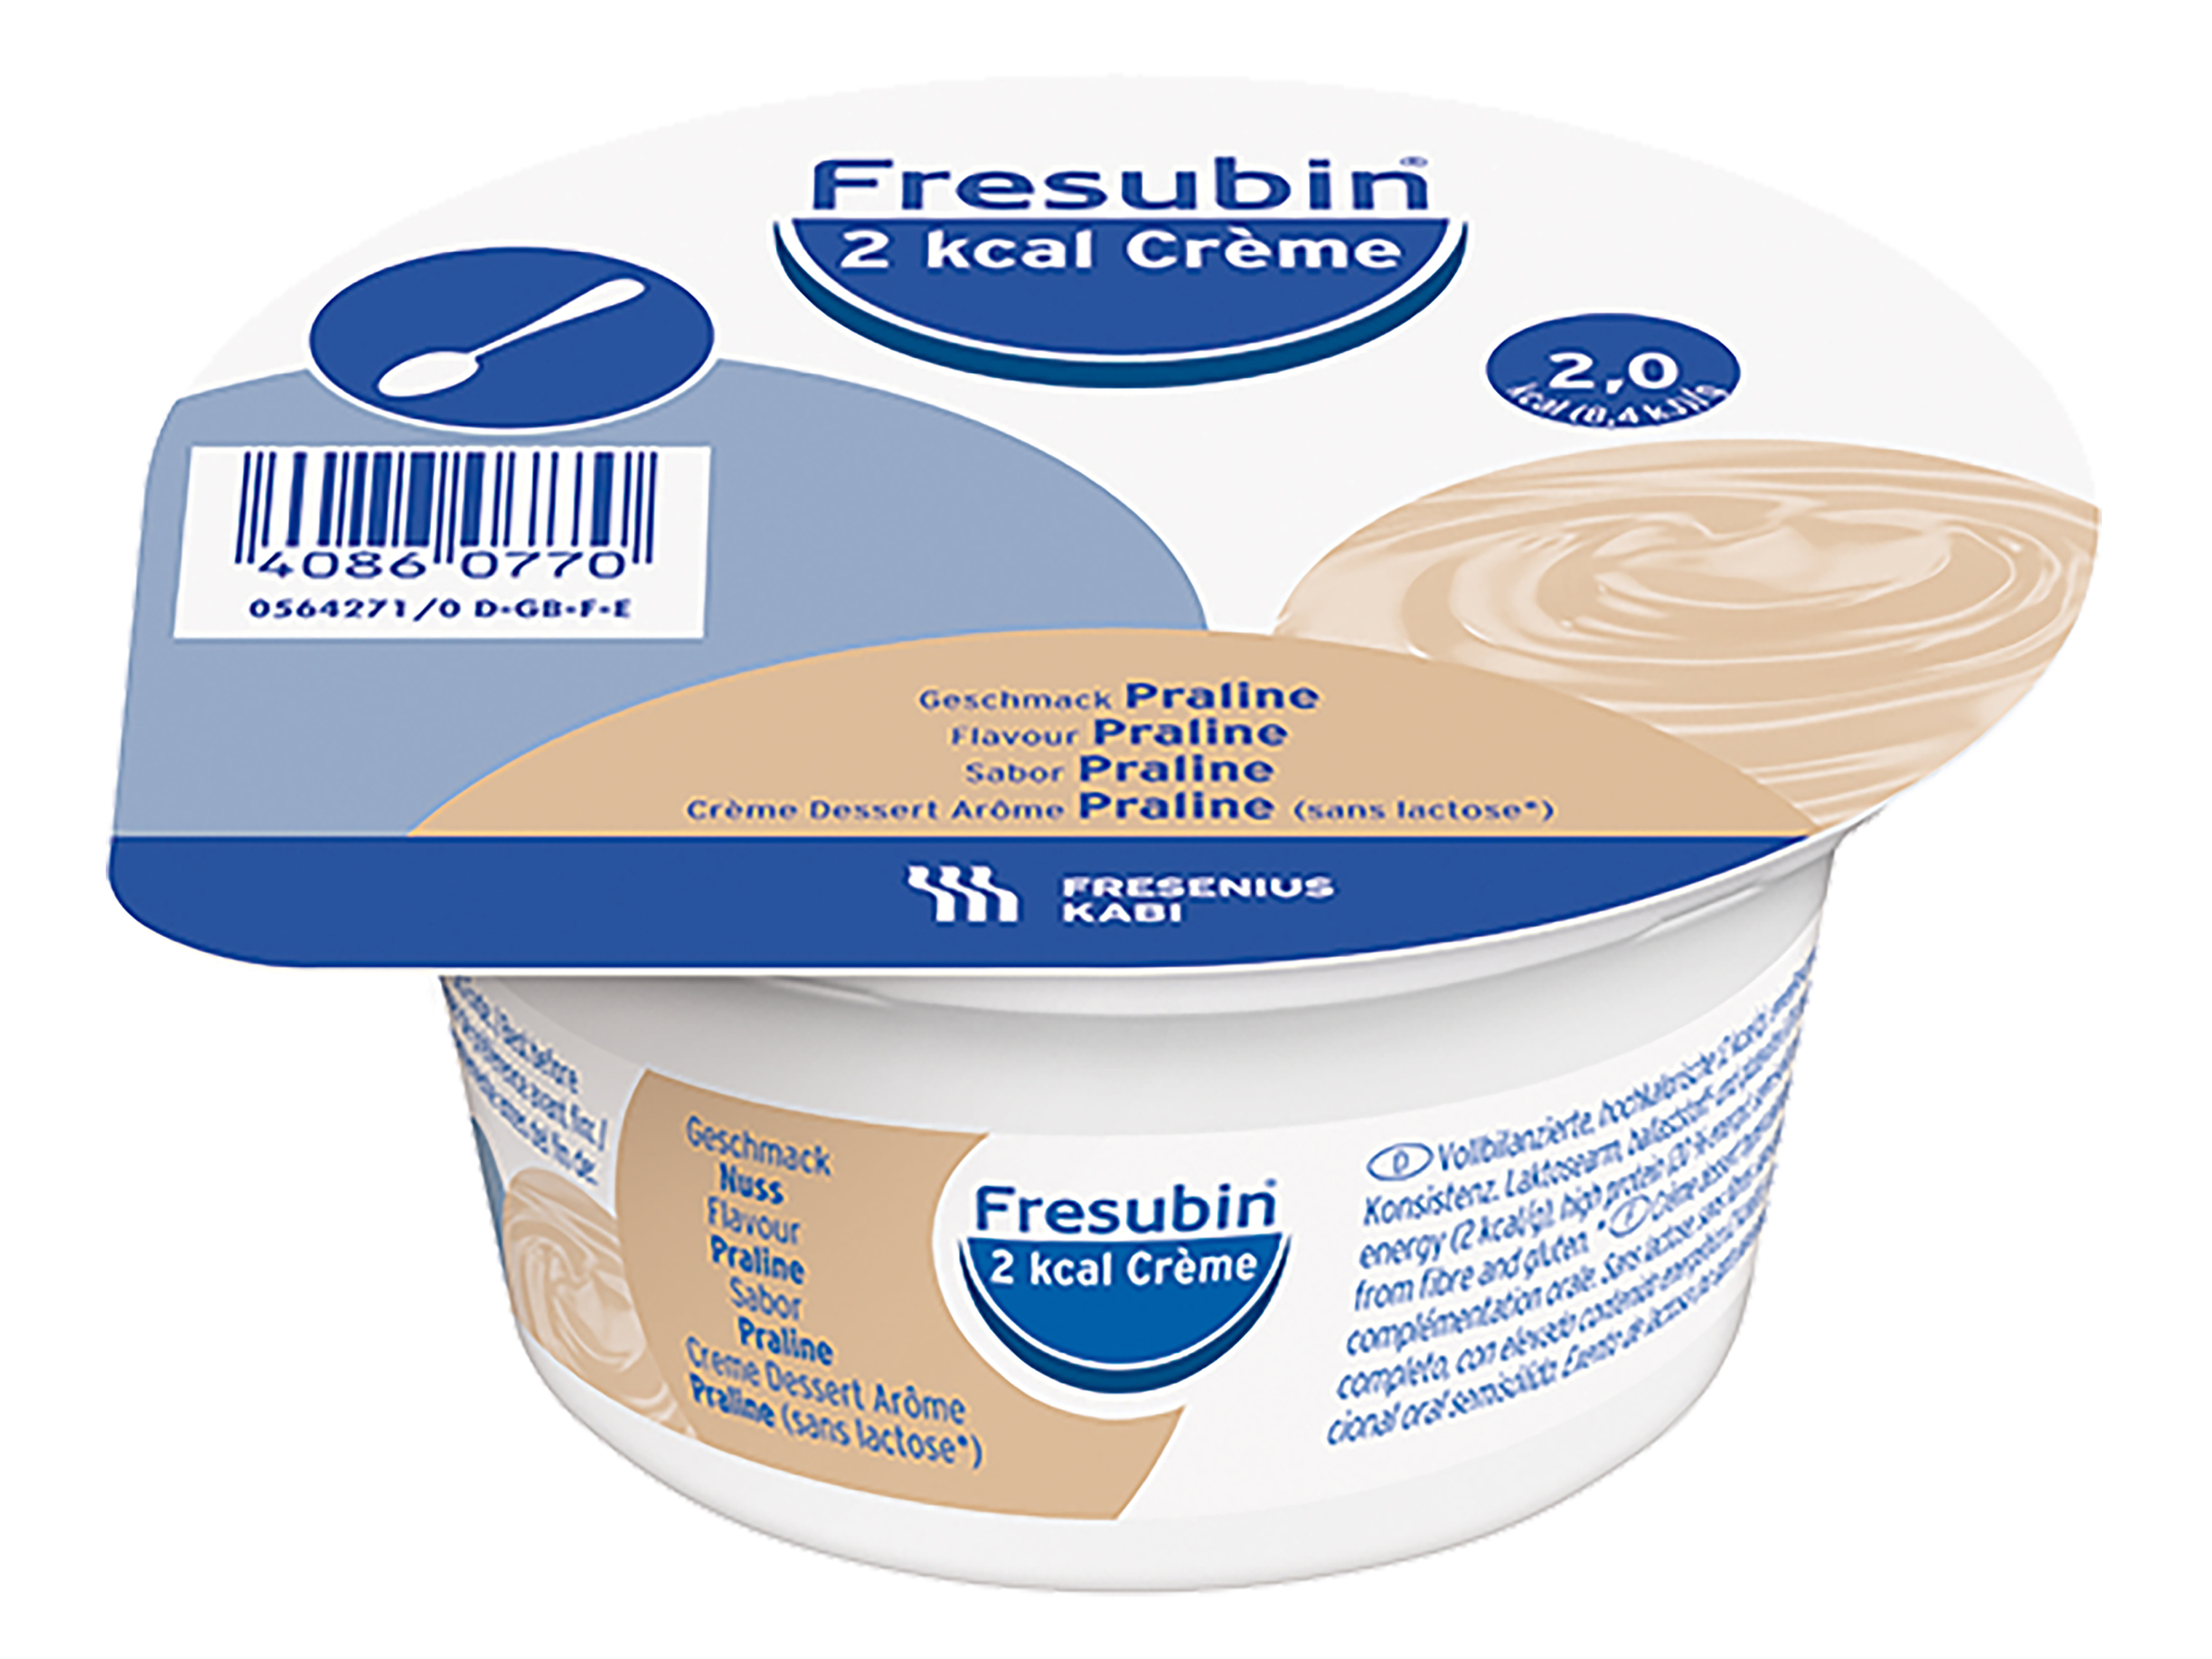 Fresubin 2kcal Crème nougat, 4x125 ml